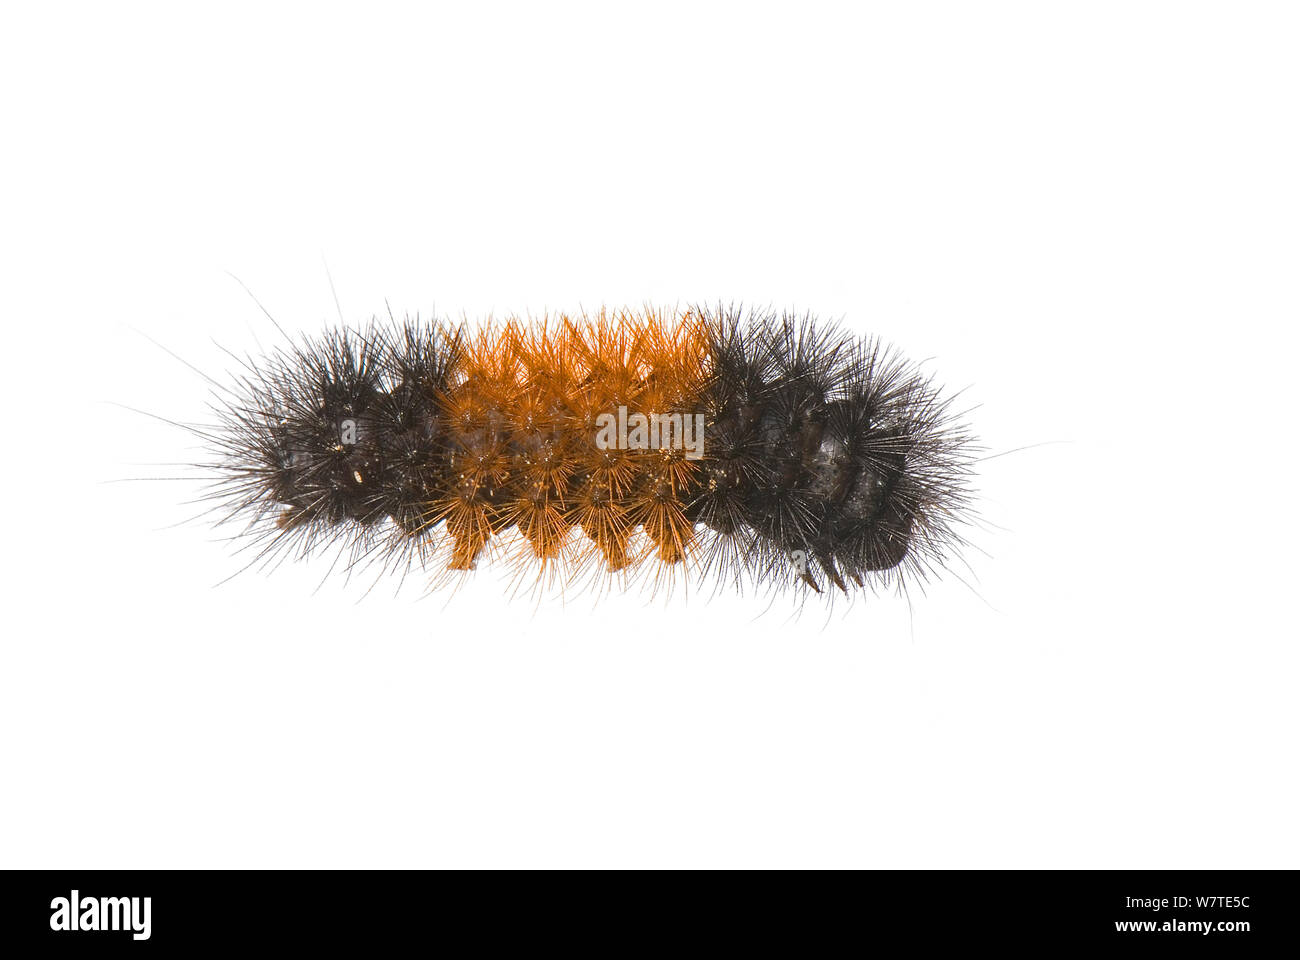 Ours laineux bagués (caterpillar Pyrrharctia isabella) Washington, USA, septembre. Banque D'Images